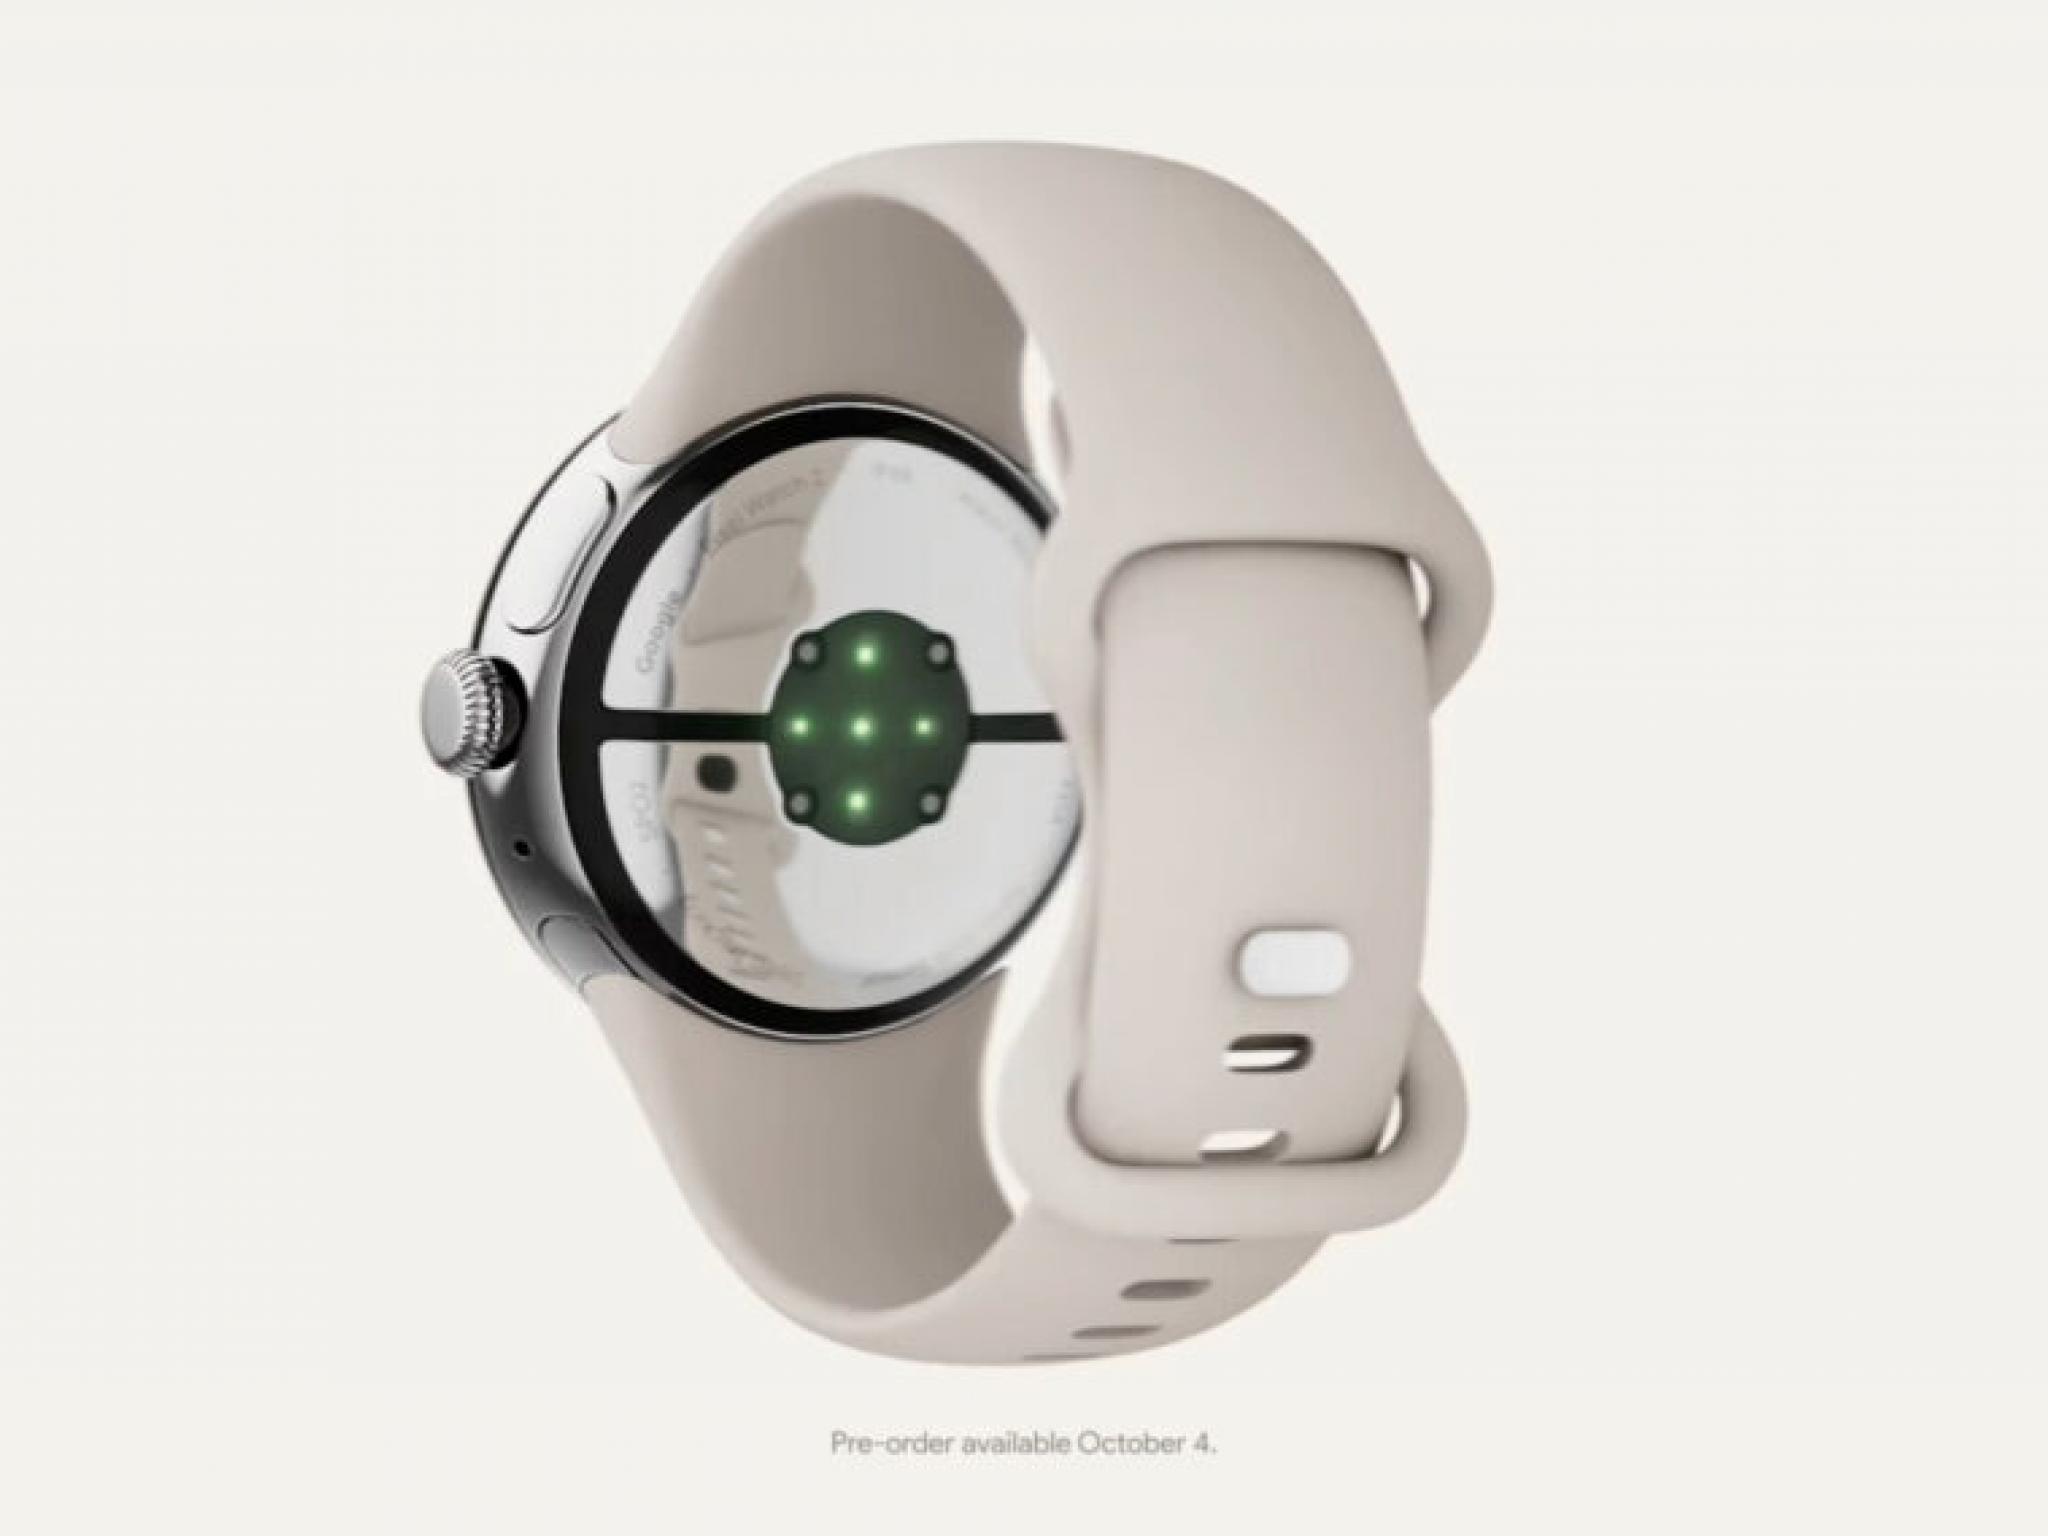 La Pixel Watch 2 empruntera les fonctionnalités de Fitbit comme le suivi du stress et la mesure de la température - Goliaths actualités boursière